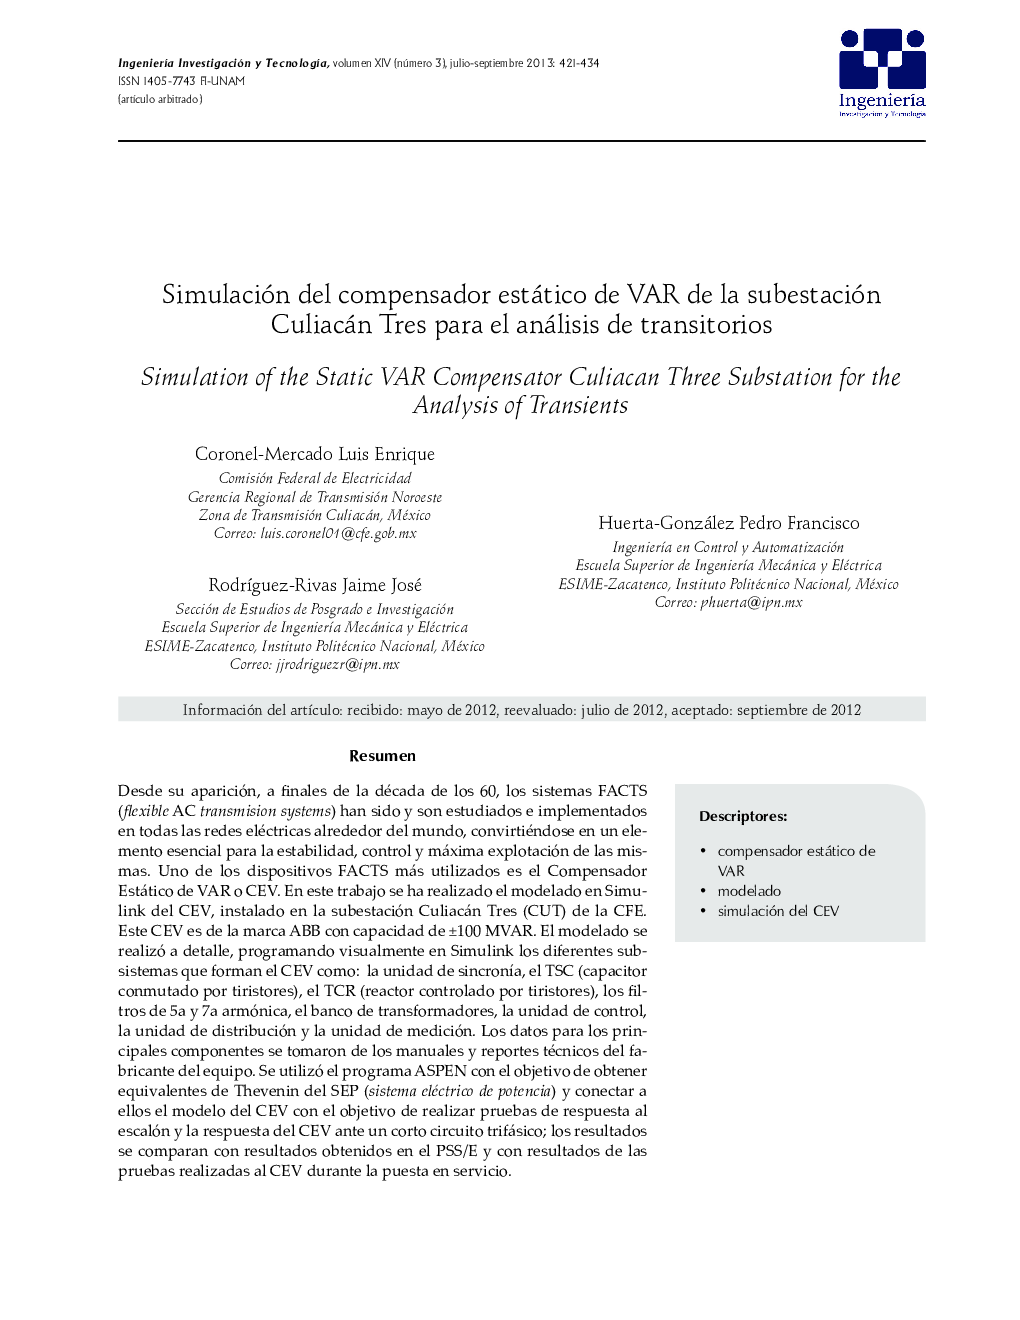 Simulación del compensador estático de VAR de la subestación Culiacán Tres para el análisis de transitorios *